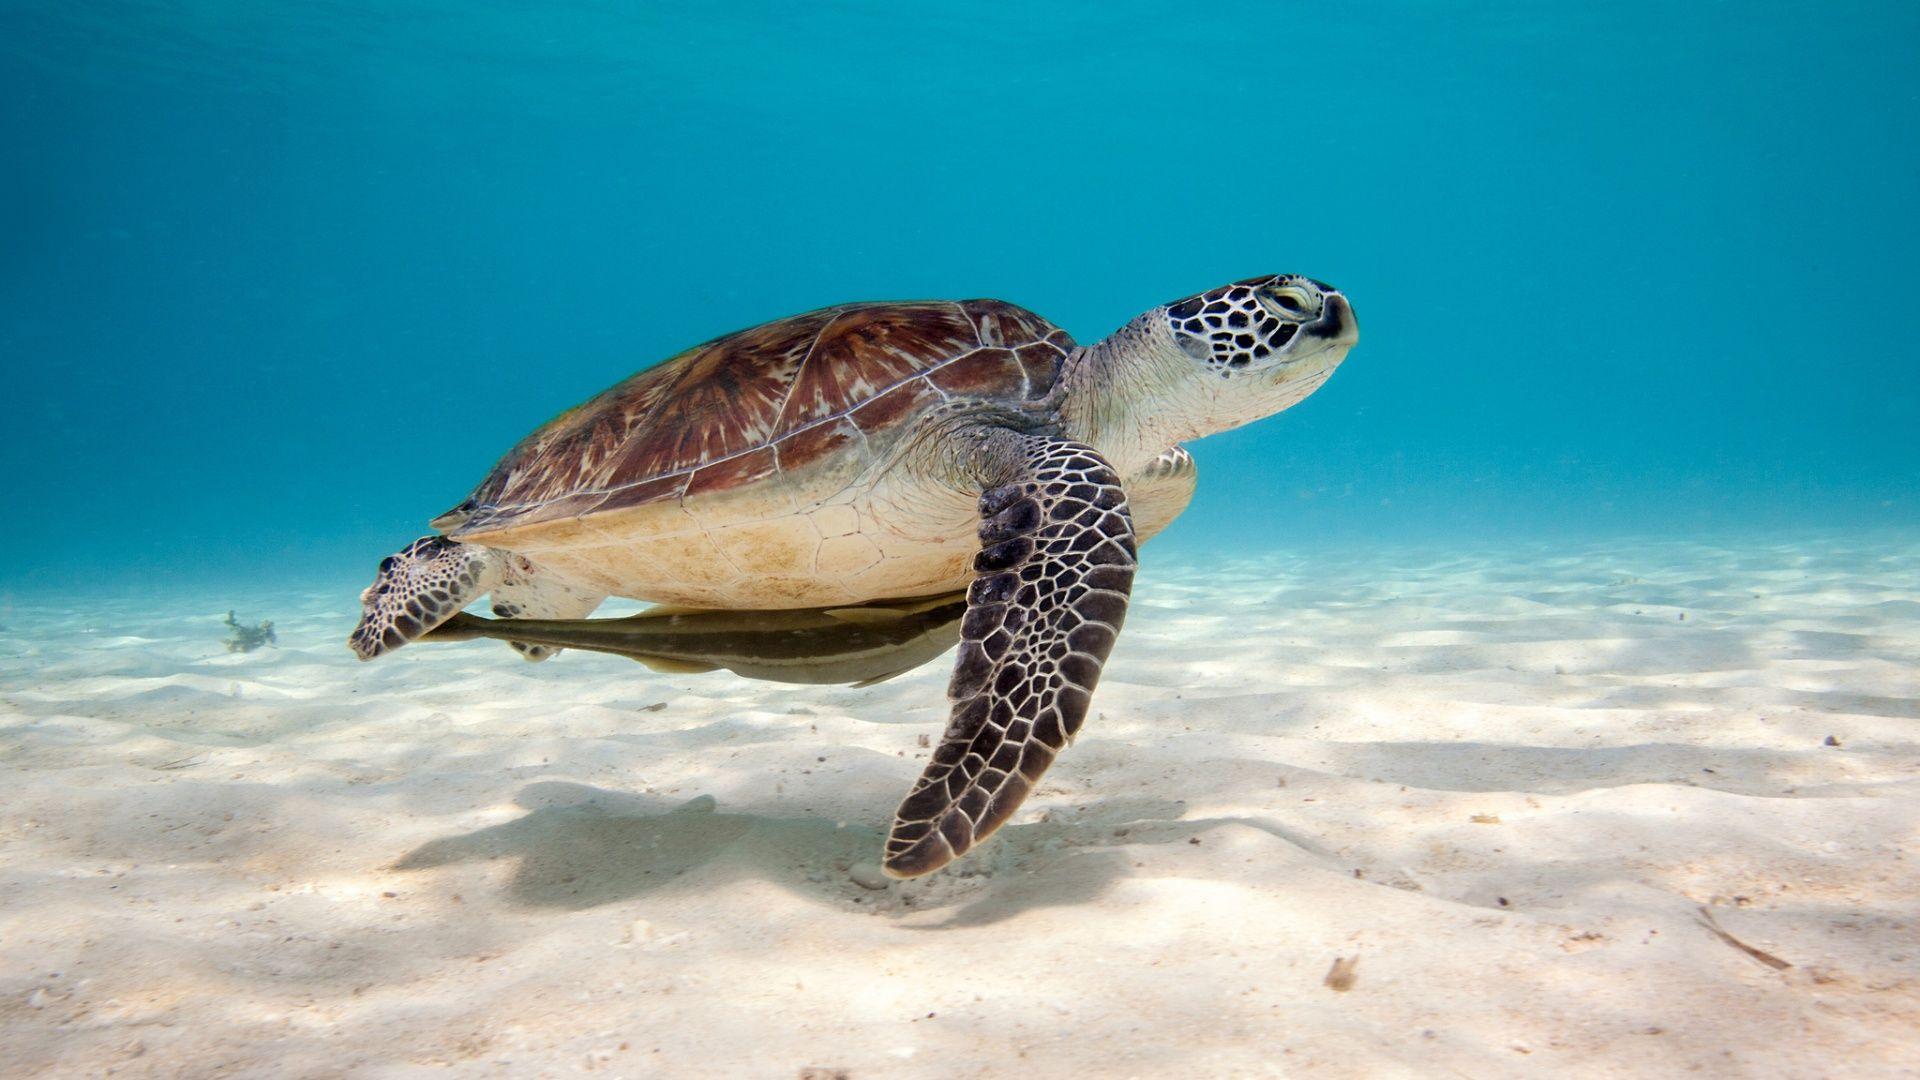 Sea Turtle. Sea turtle wallpaper, Turtle, Turtle swimming